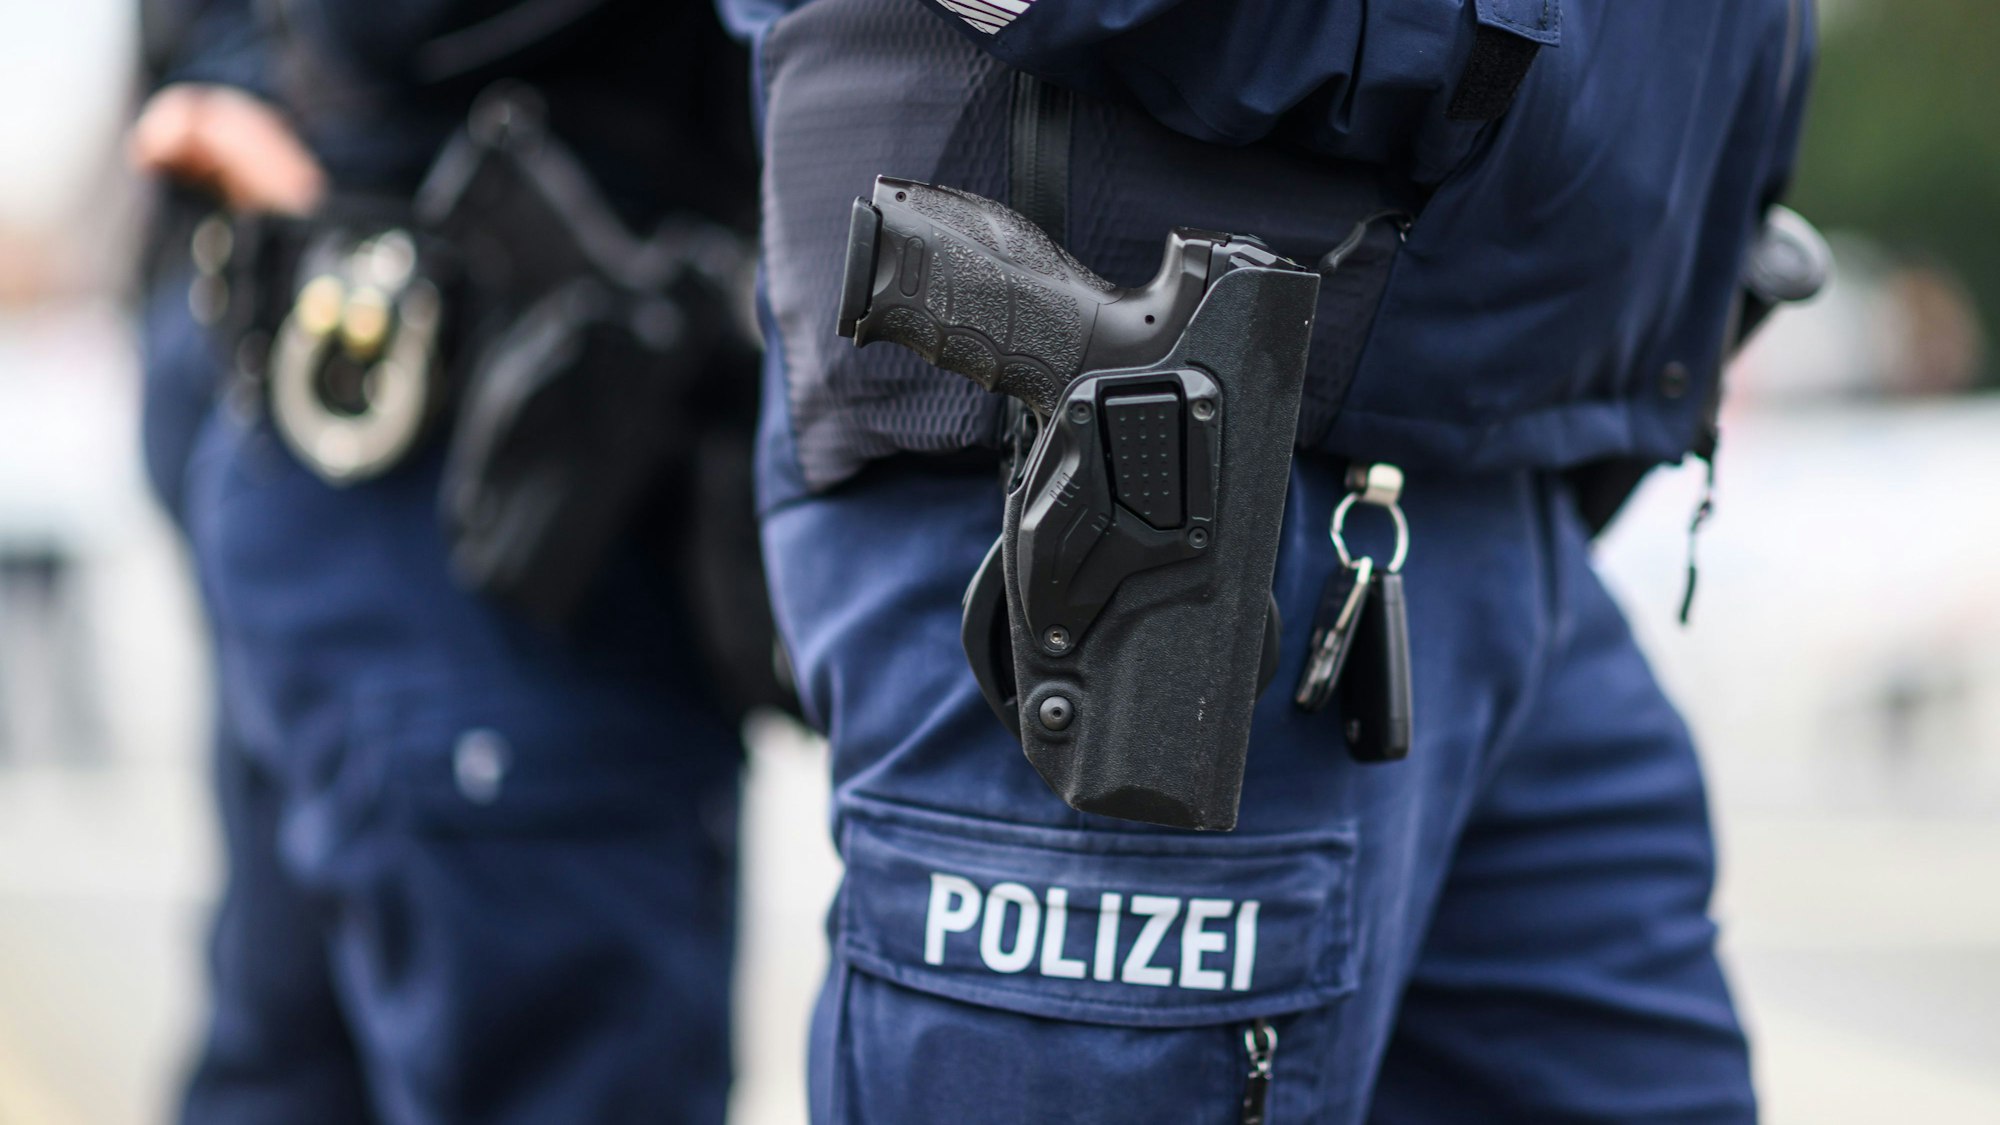 Das Bild zeigt zwei Polizeibeamte mit Dienstwaffe im Holster.